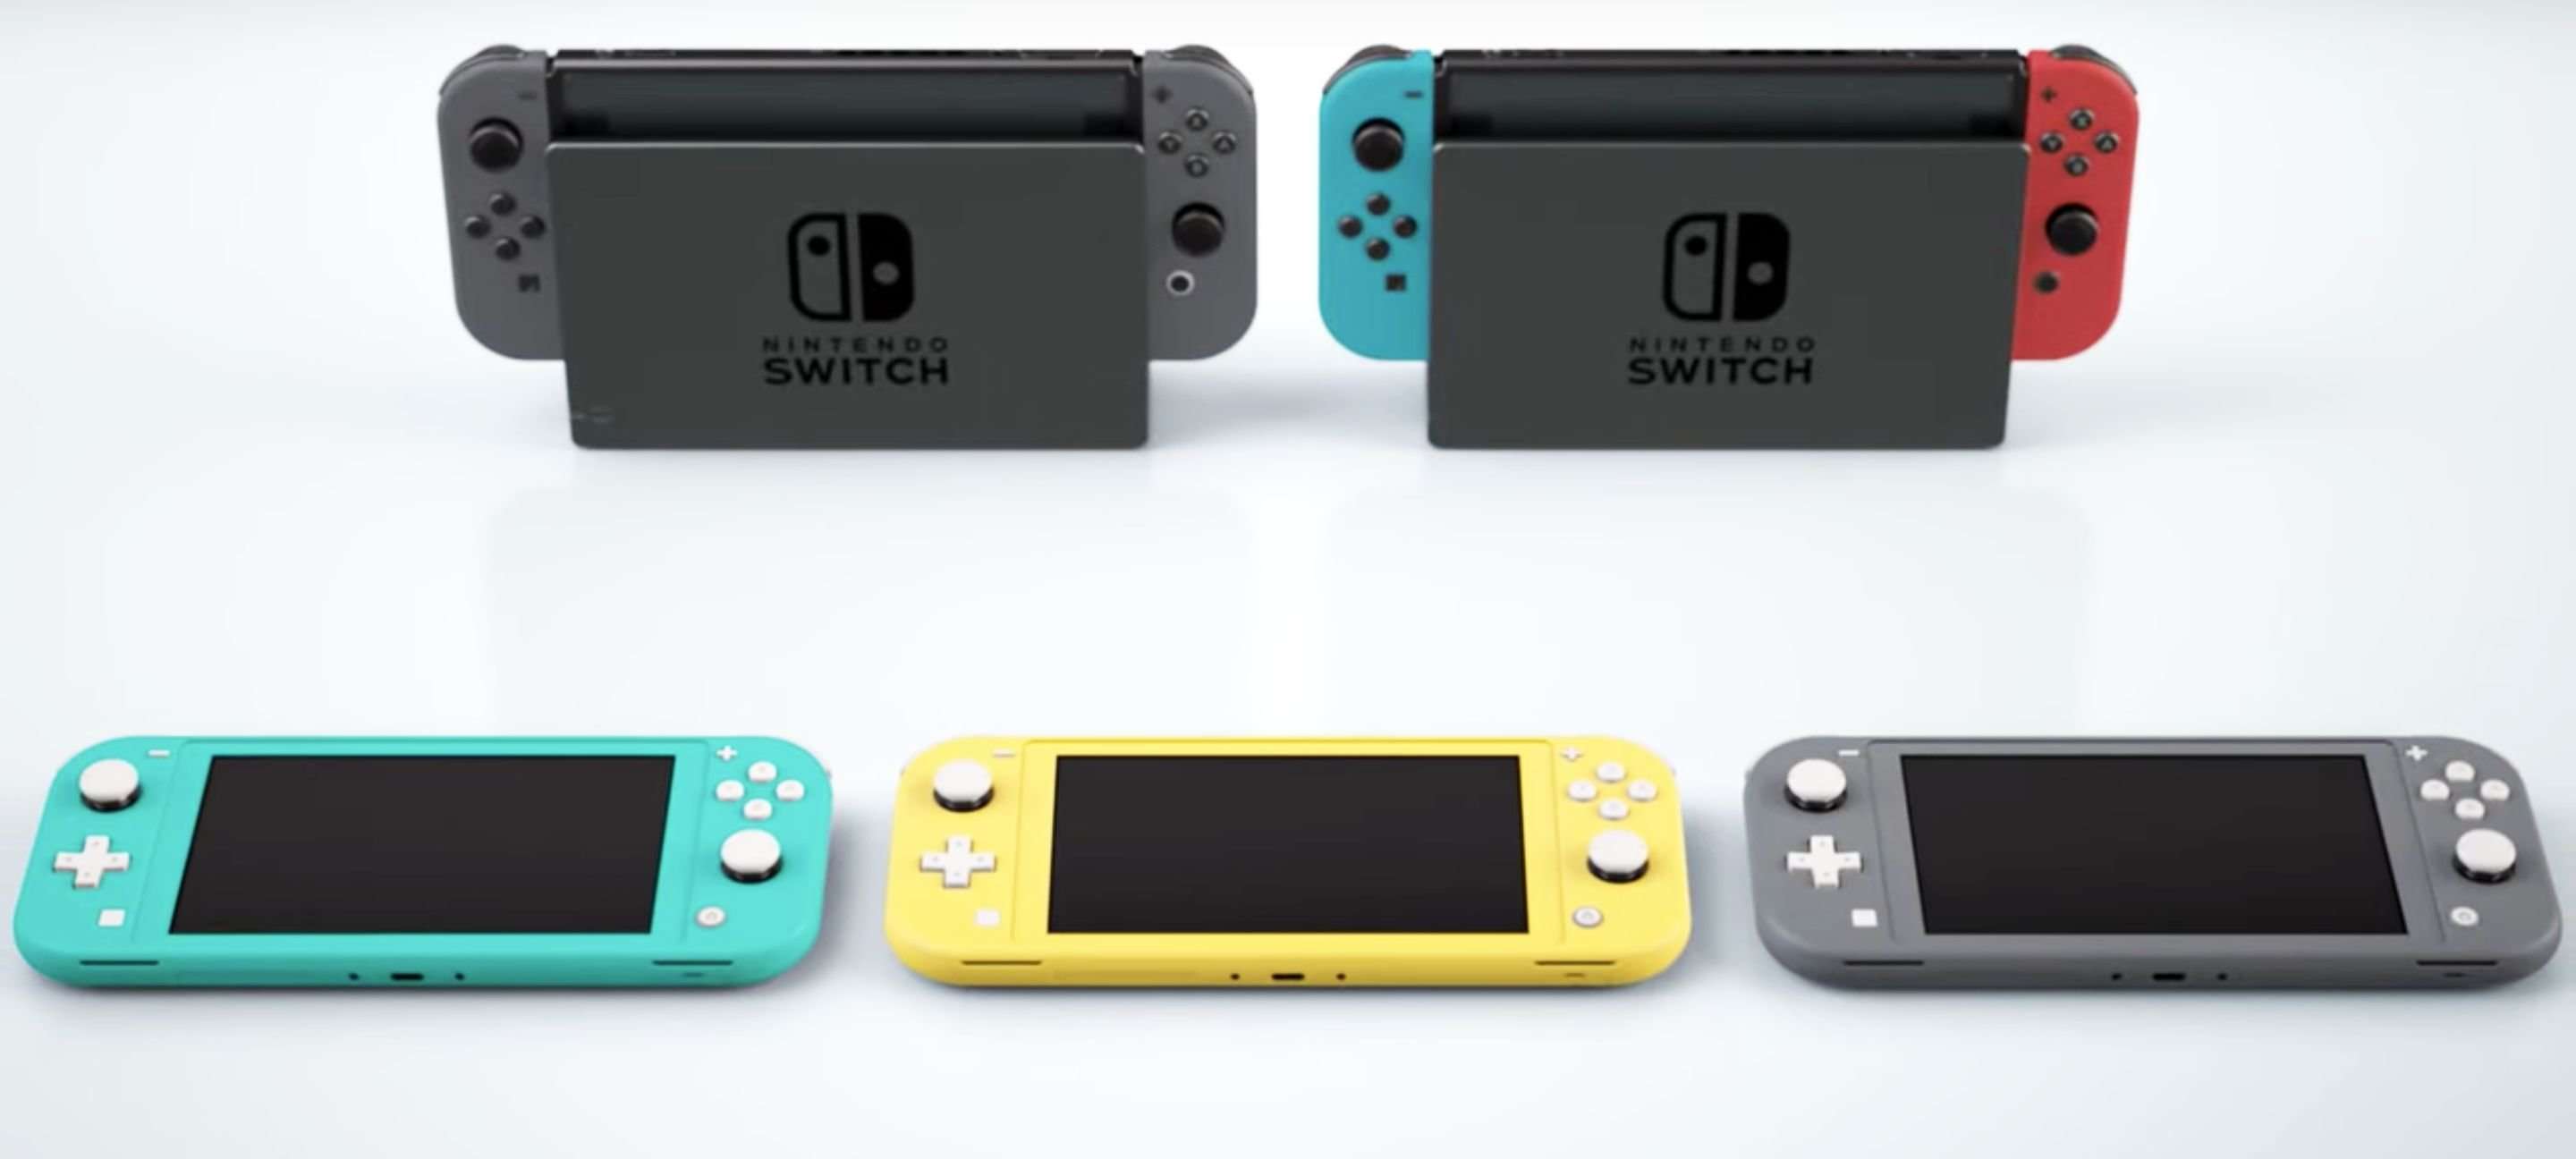 Prezes Nintendo: &quot;Switch Lite jedynym nowym hardwarem Nintendo w 2019 roku&quot;. Co dalej z 3DS?